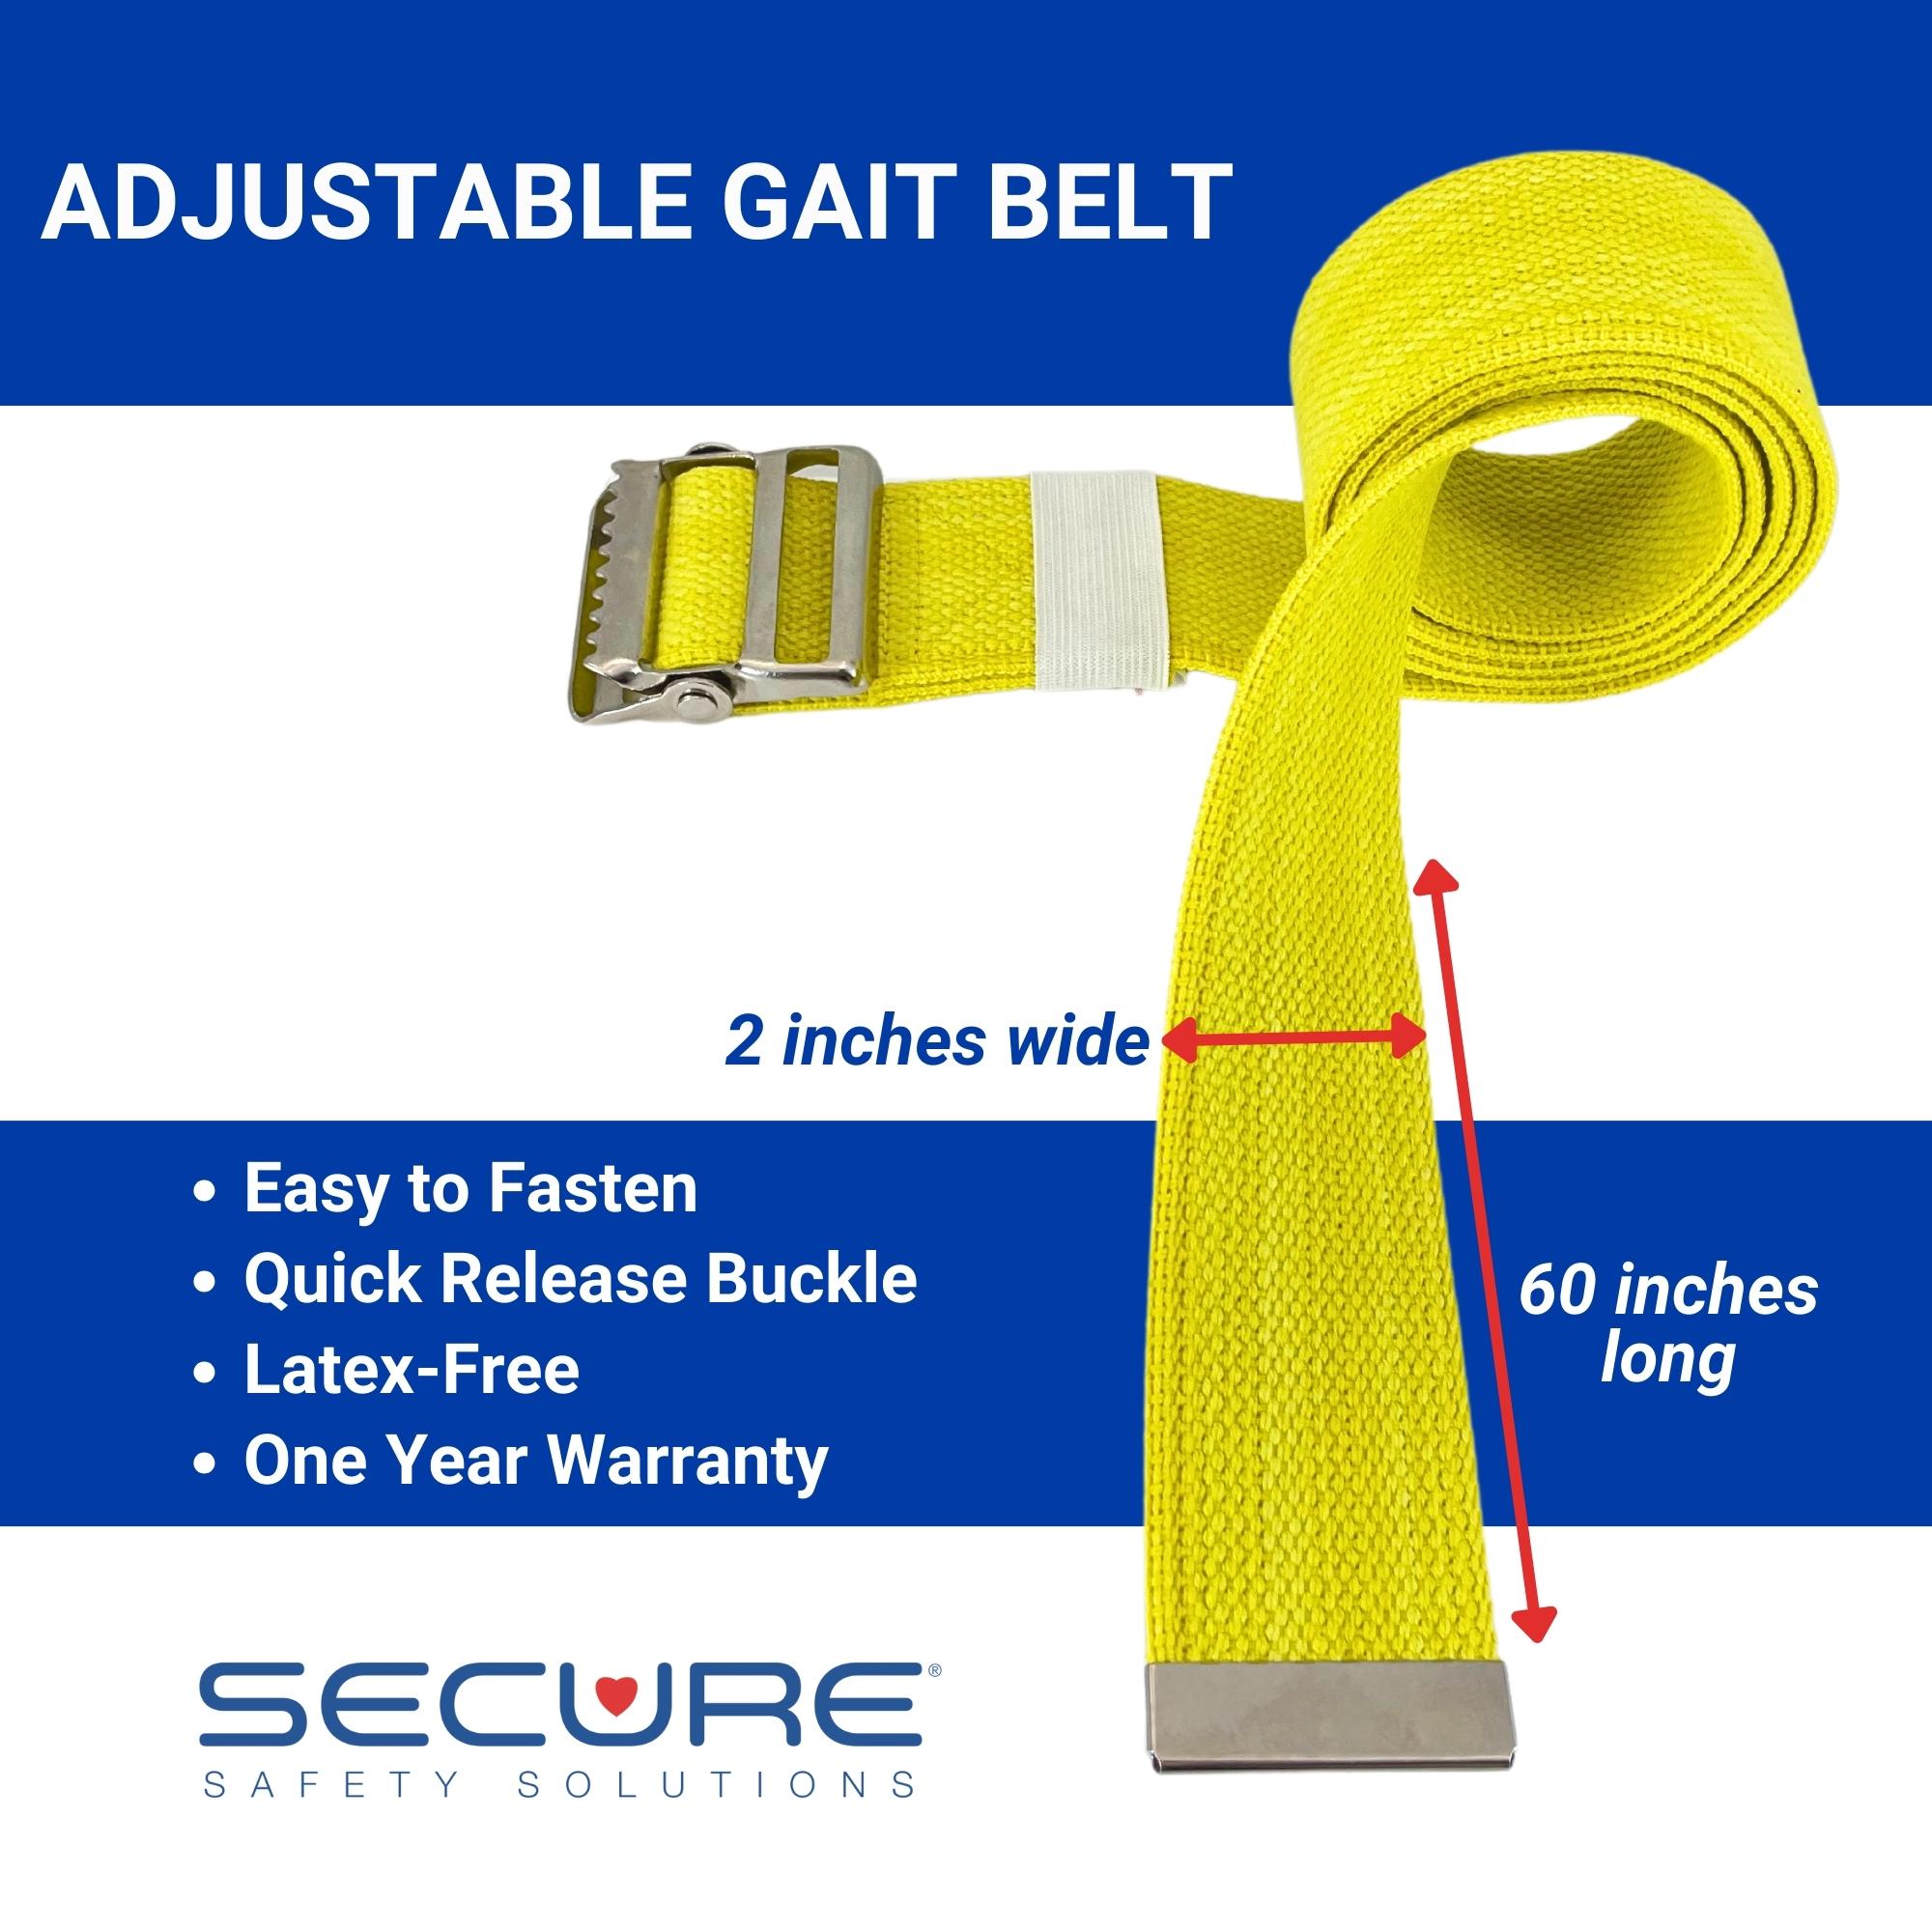 60 inch Gait Belt with YKK Plastic Buckle